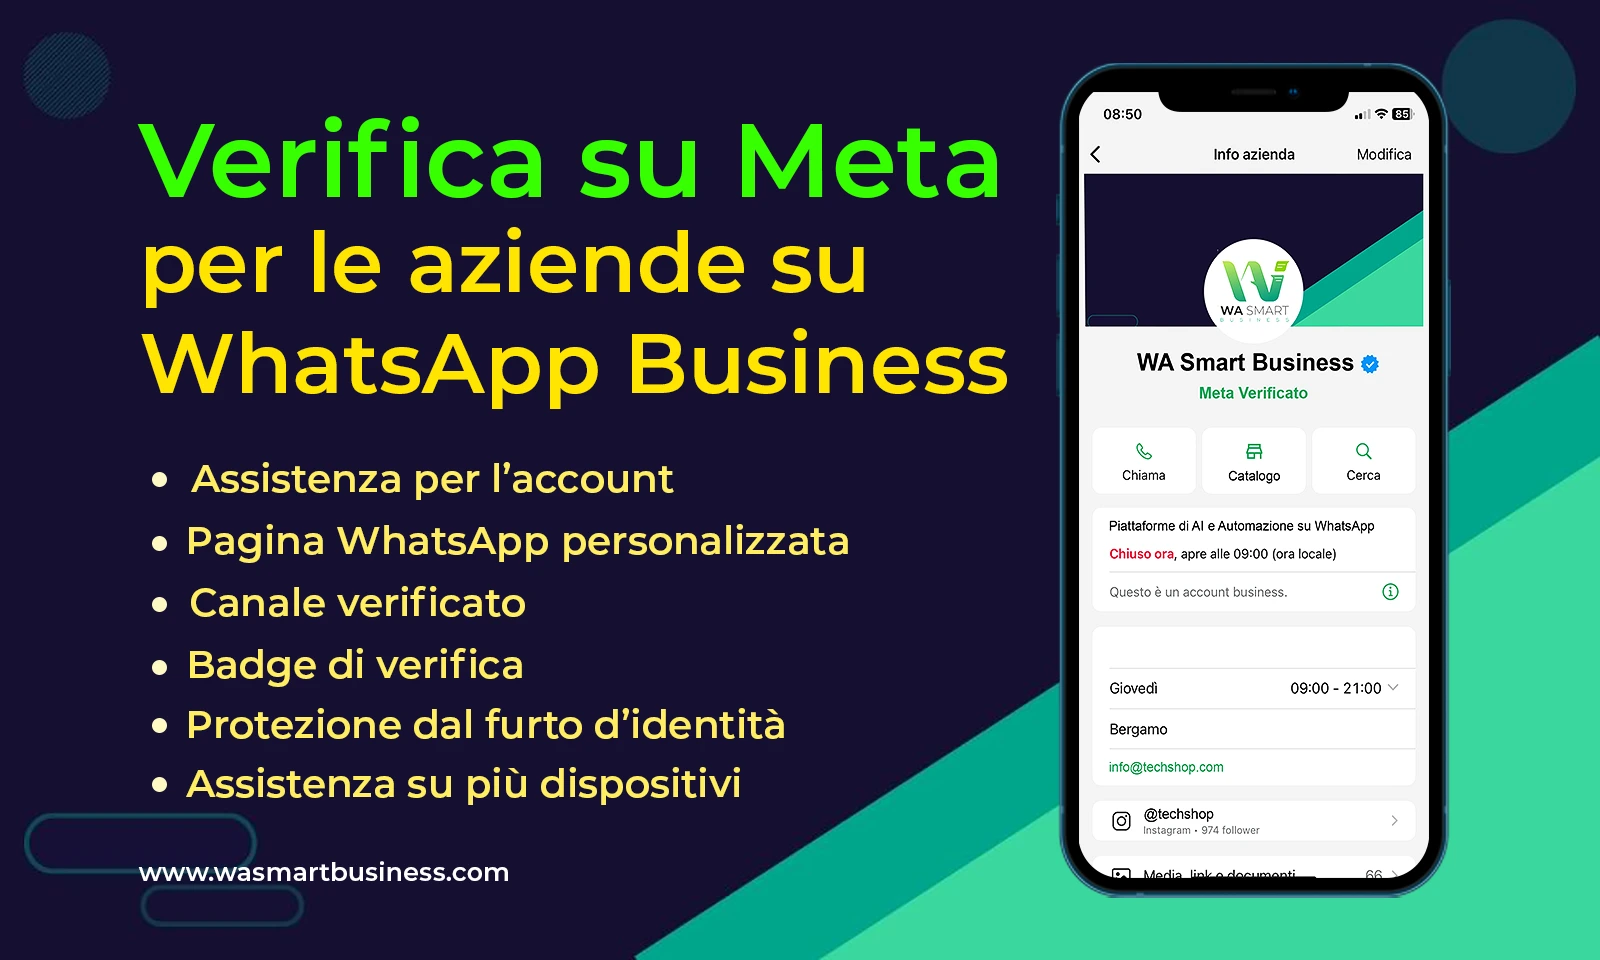 Azienda verificata su WhatsApp con Meta Verified - WA Smart Business